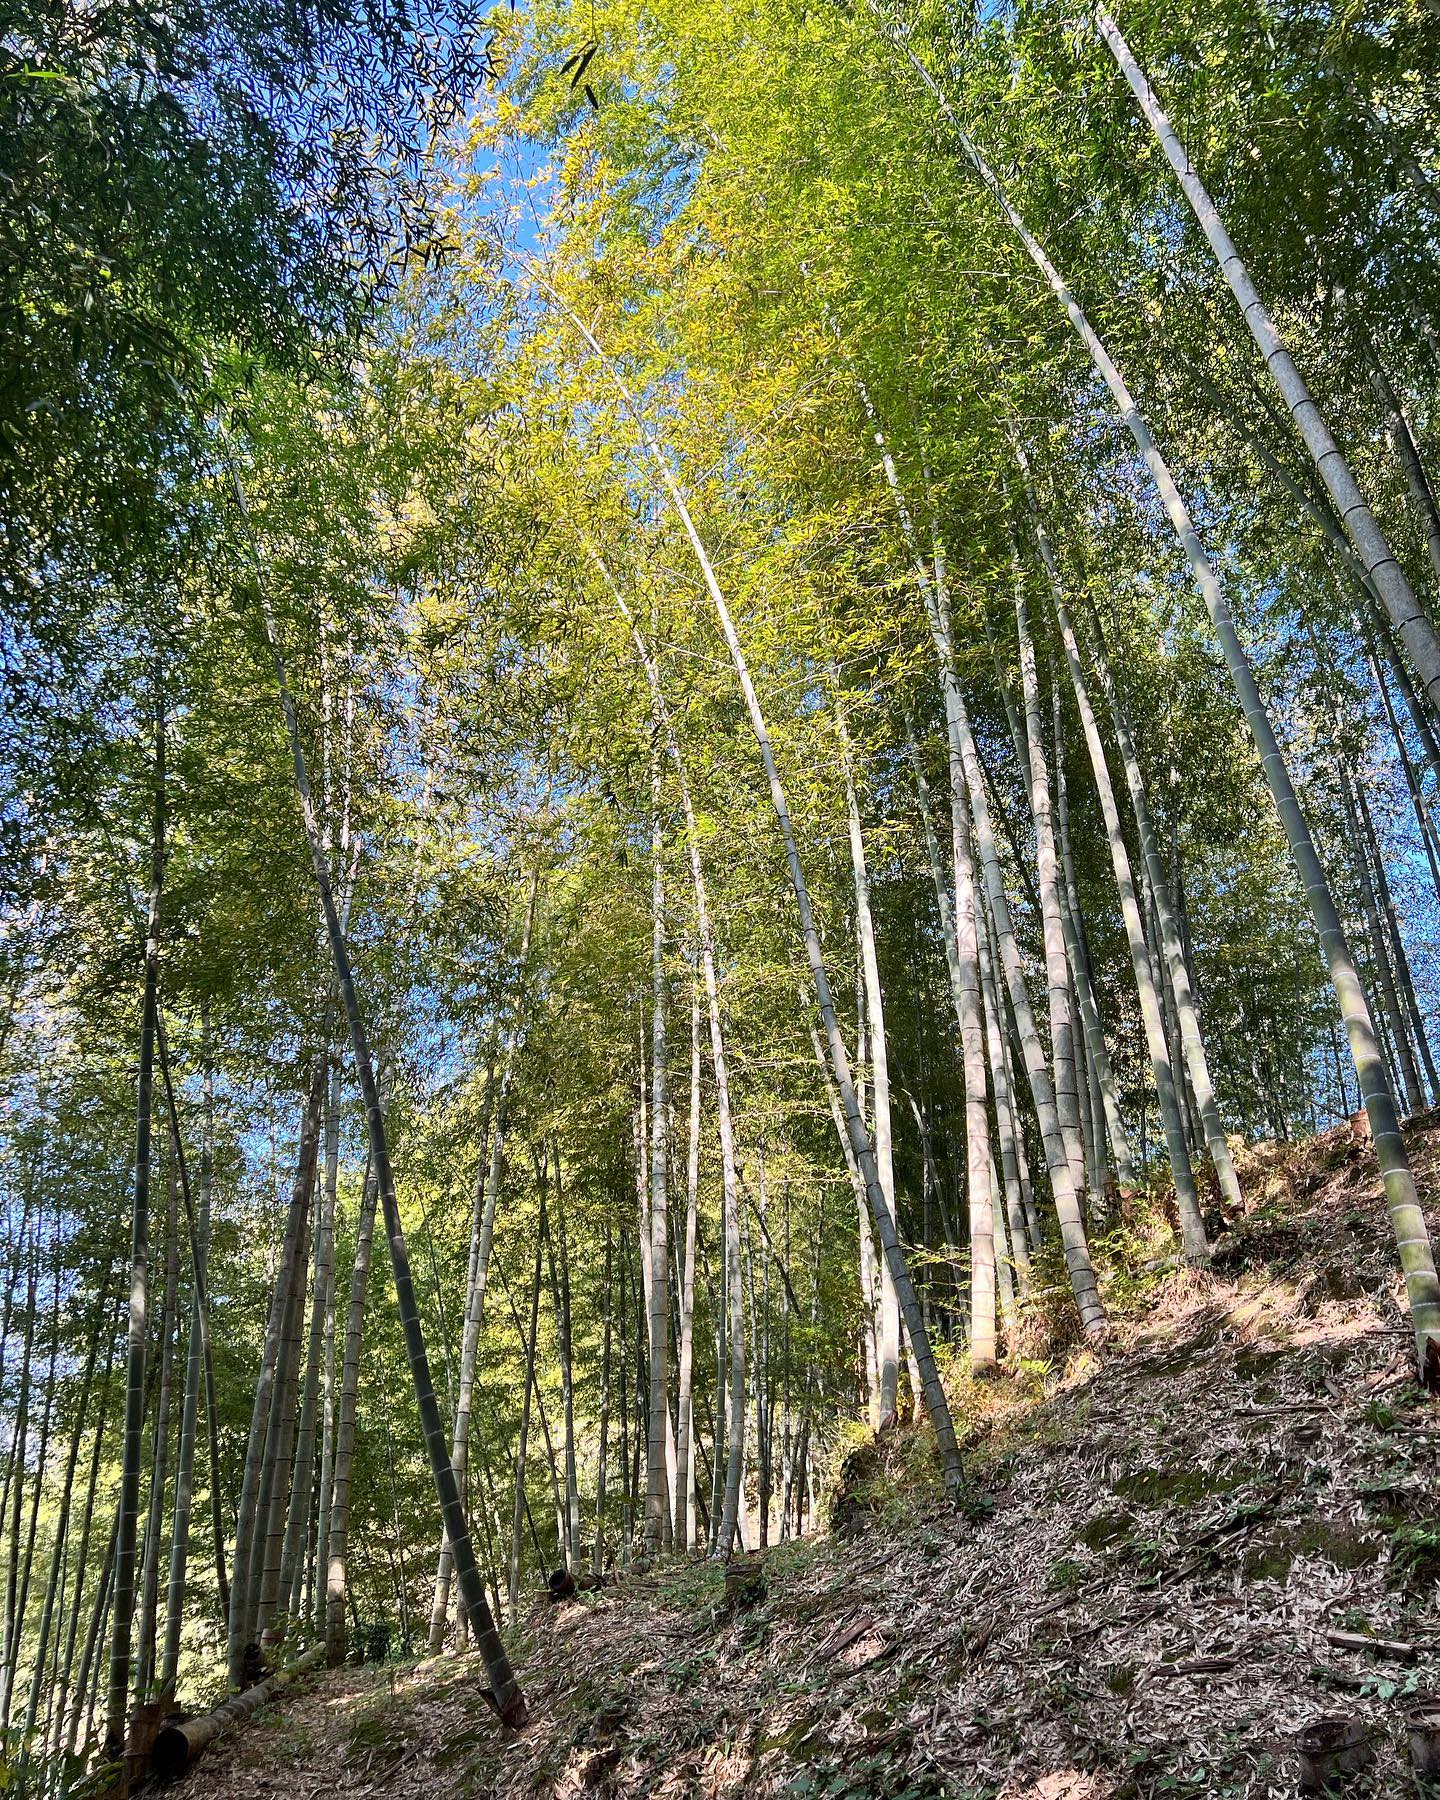 竹やぶ秋になって整備シーズンになってきましたね！夏にのびてた草刈りかって、竹の間伐も進めていきますよー！そして間伐した竹もなるべく使うように加工の段取りも行っています#竹 #竹林 #bamboo #竹やぶ #里山 #自然 #環境 #自然好きな人と繋がりたい #sky #青空 #徳島 #阿南 #阿波たけのこ農園